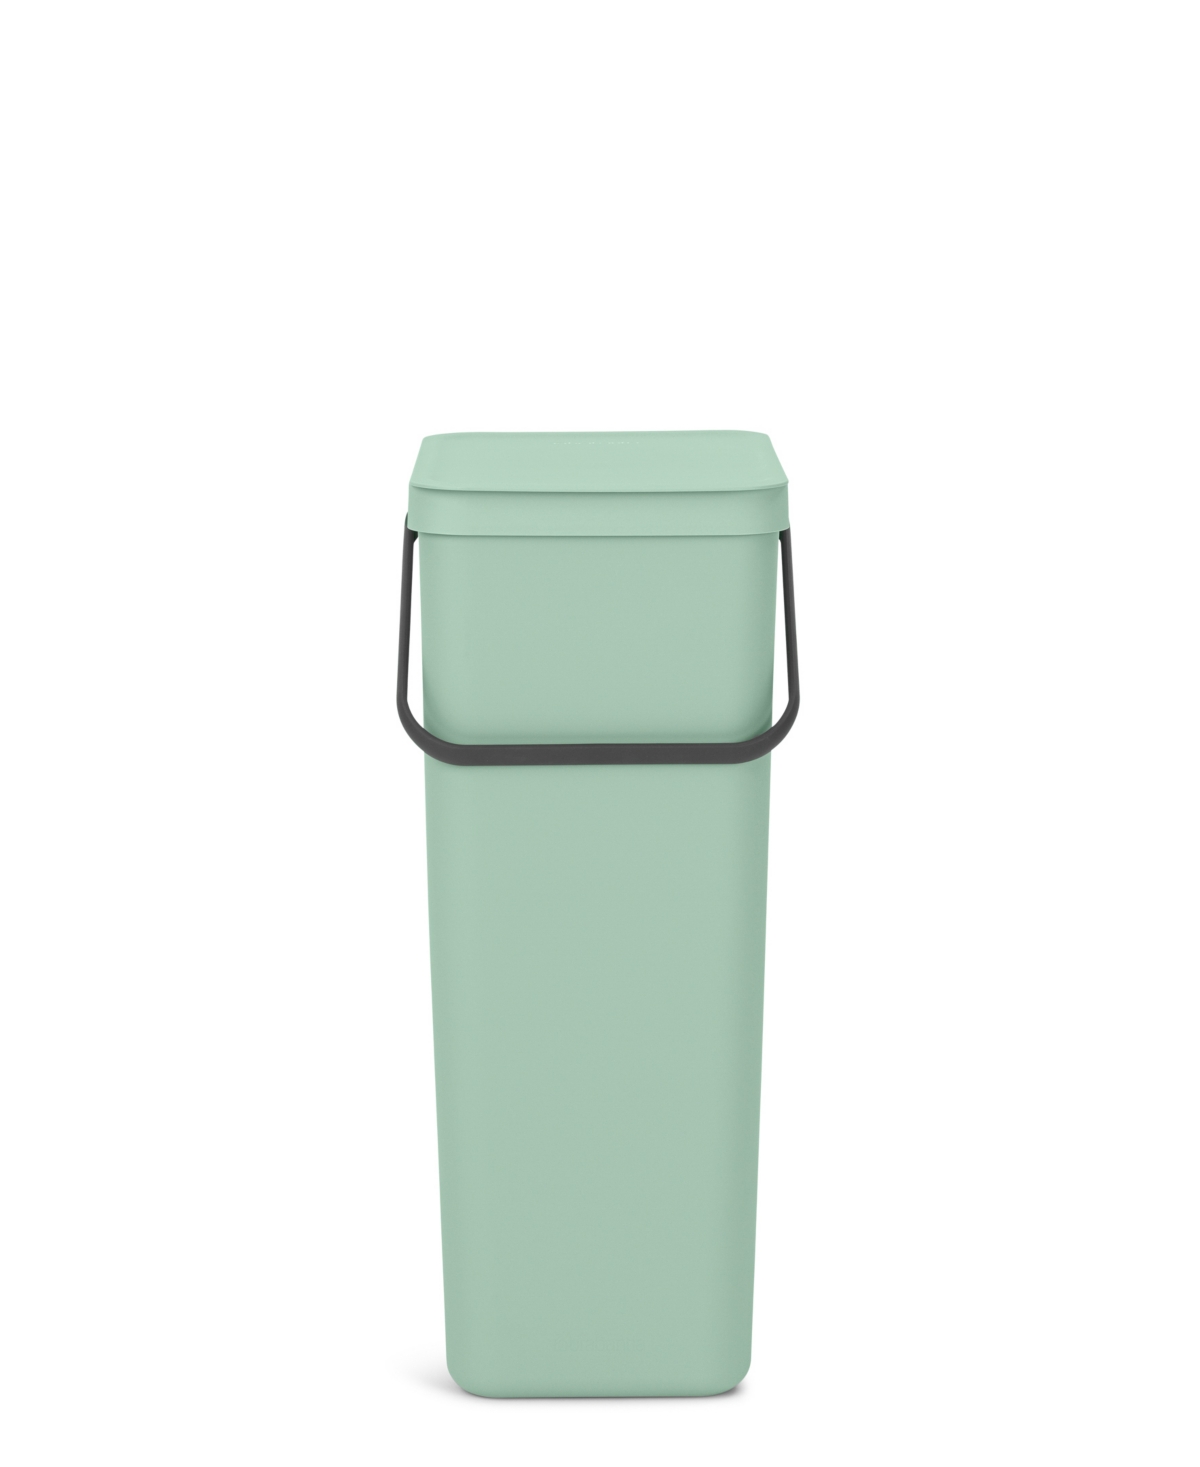 Brabantia Sort Go Plastic Bin, 10.6 Gallon, 40 Liter In Jade Green